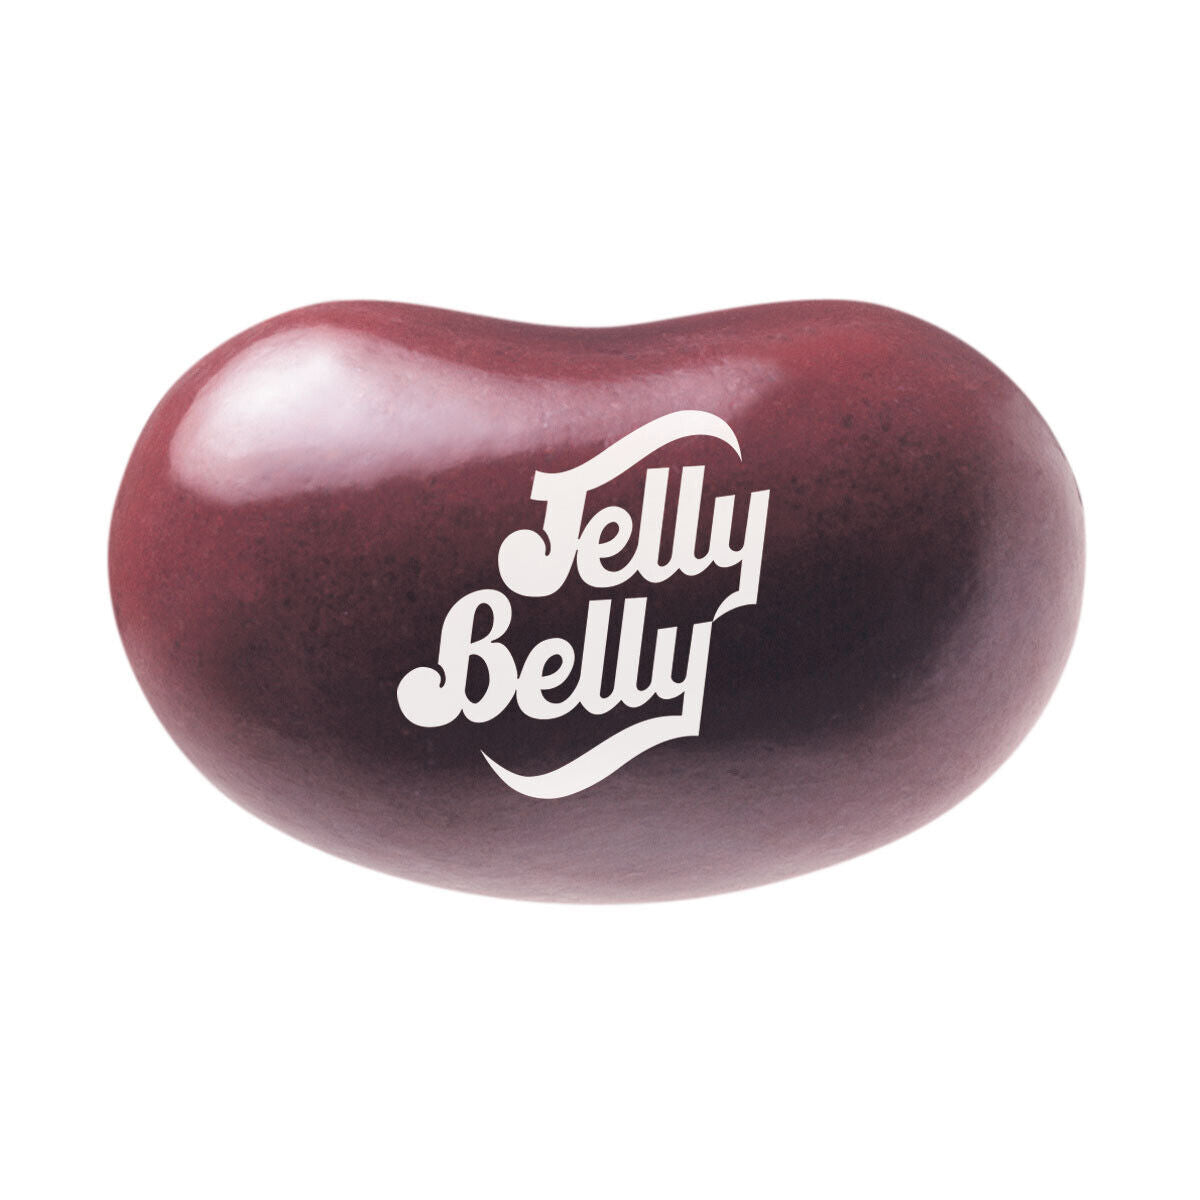 Dr. Pepper Jelly Beans Bag